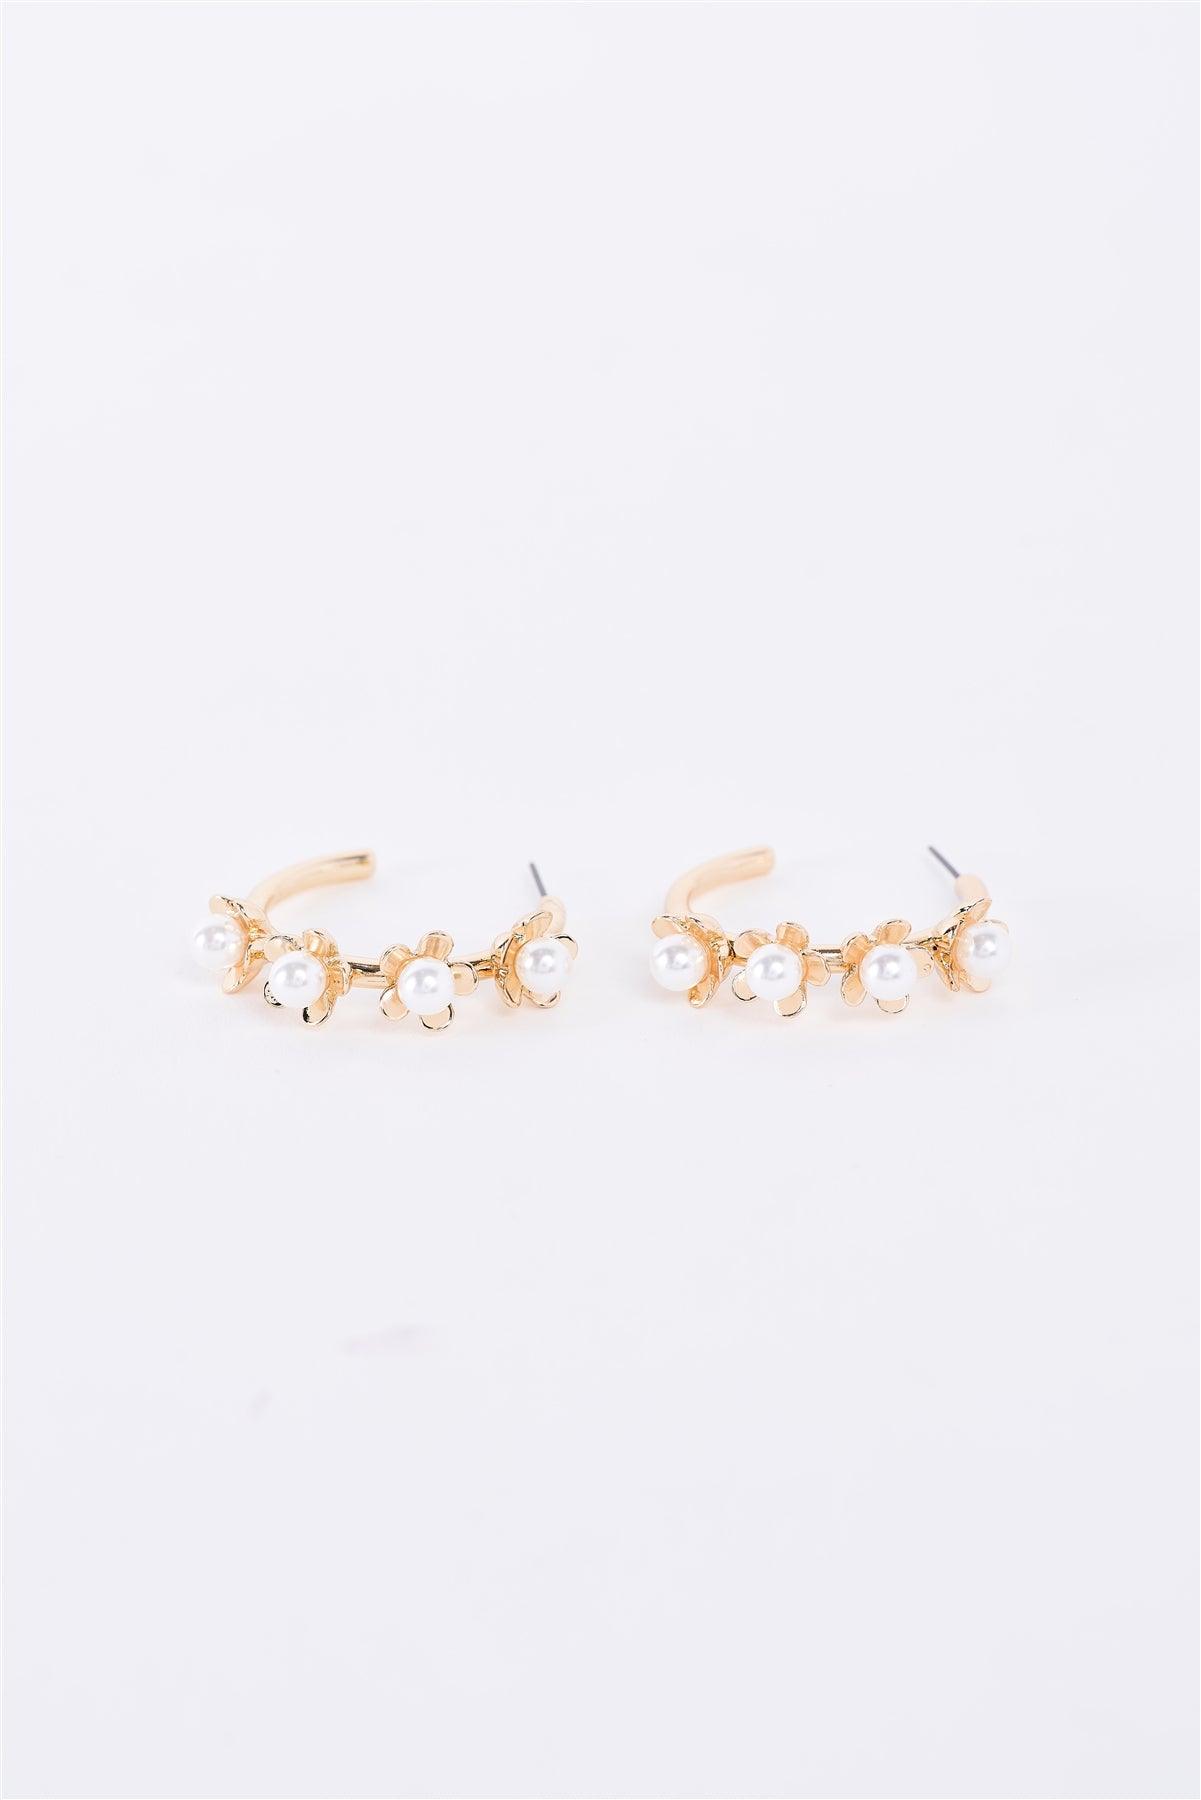 Gold & Pearl Flower Hoop Earrings /3 Pairs